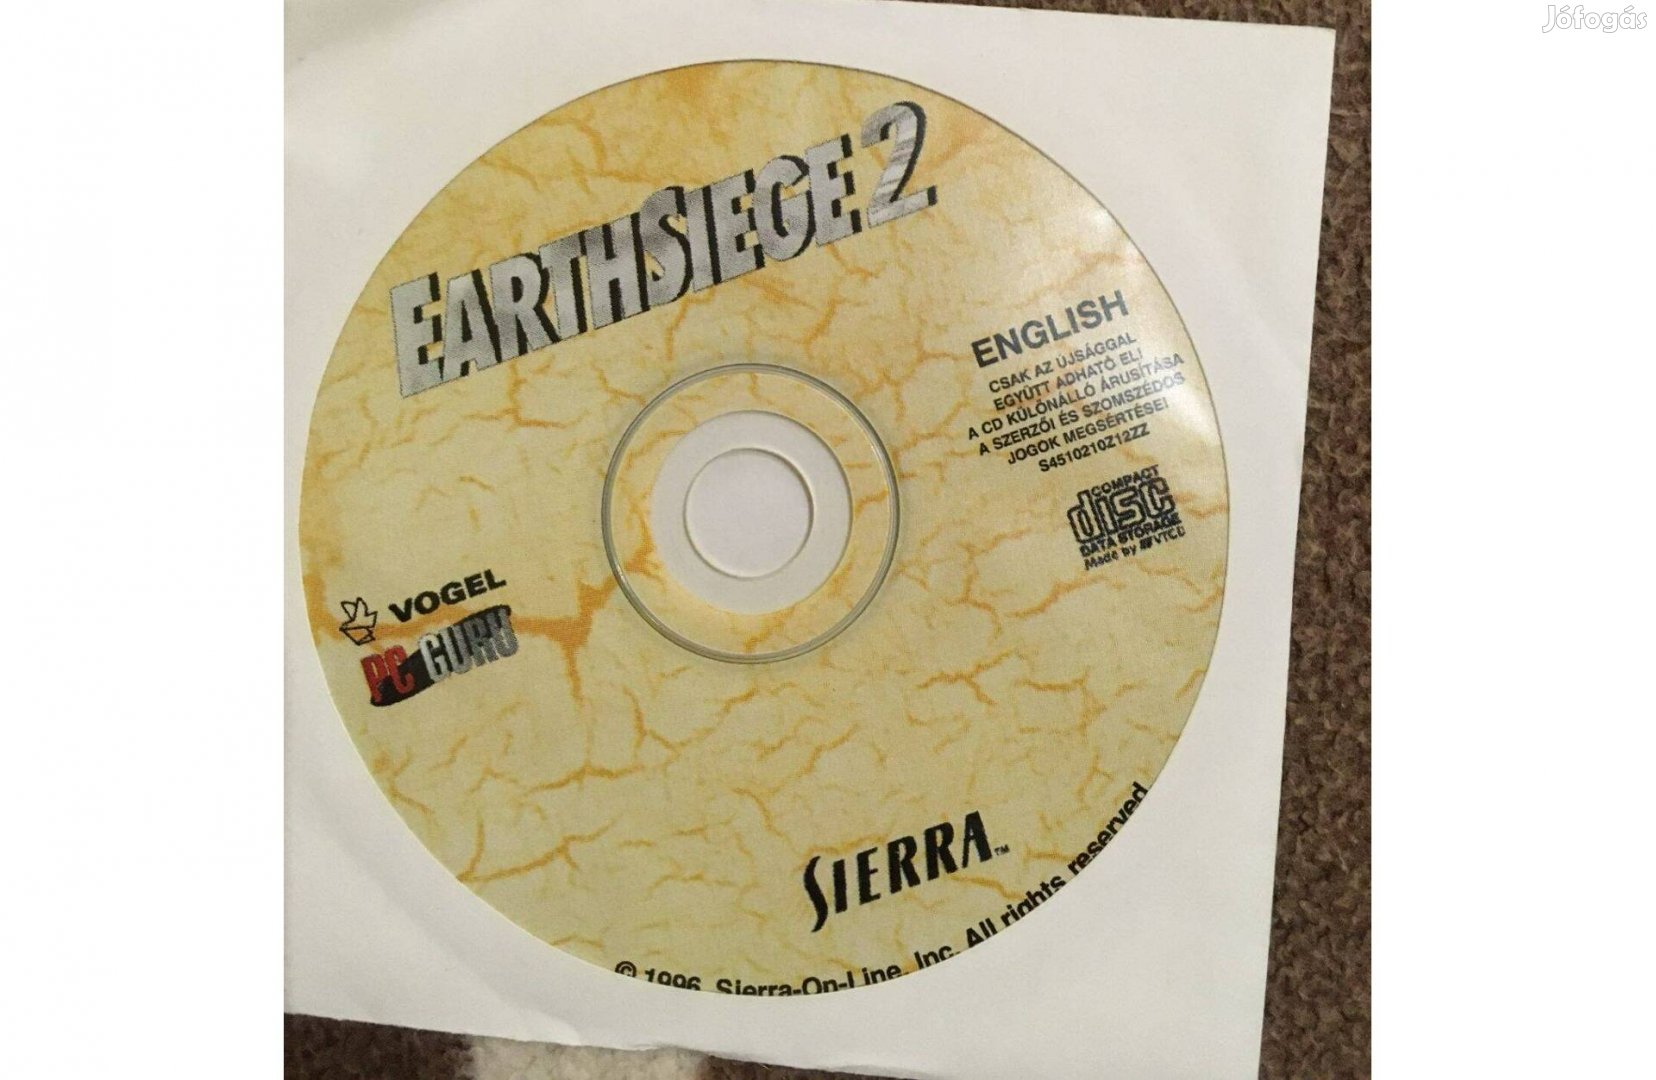 Earthsiege 2 CD